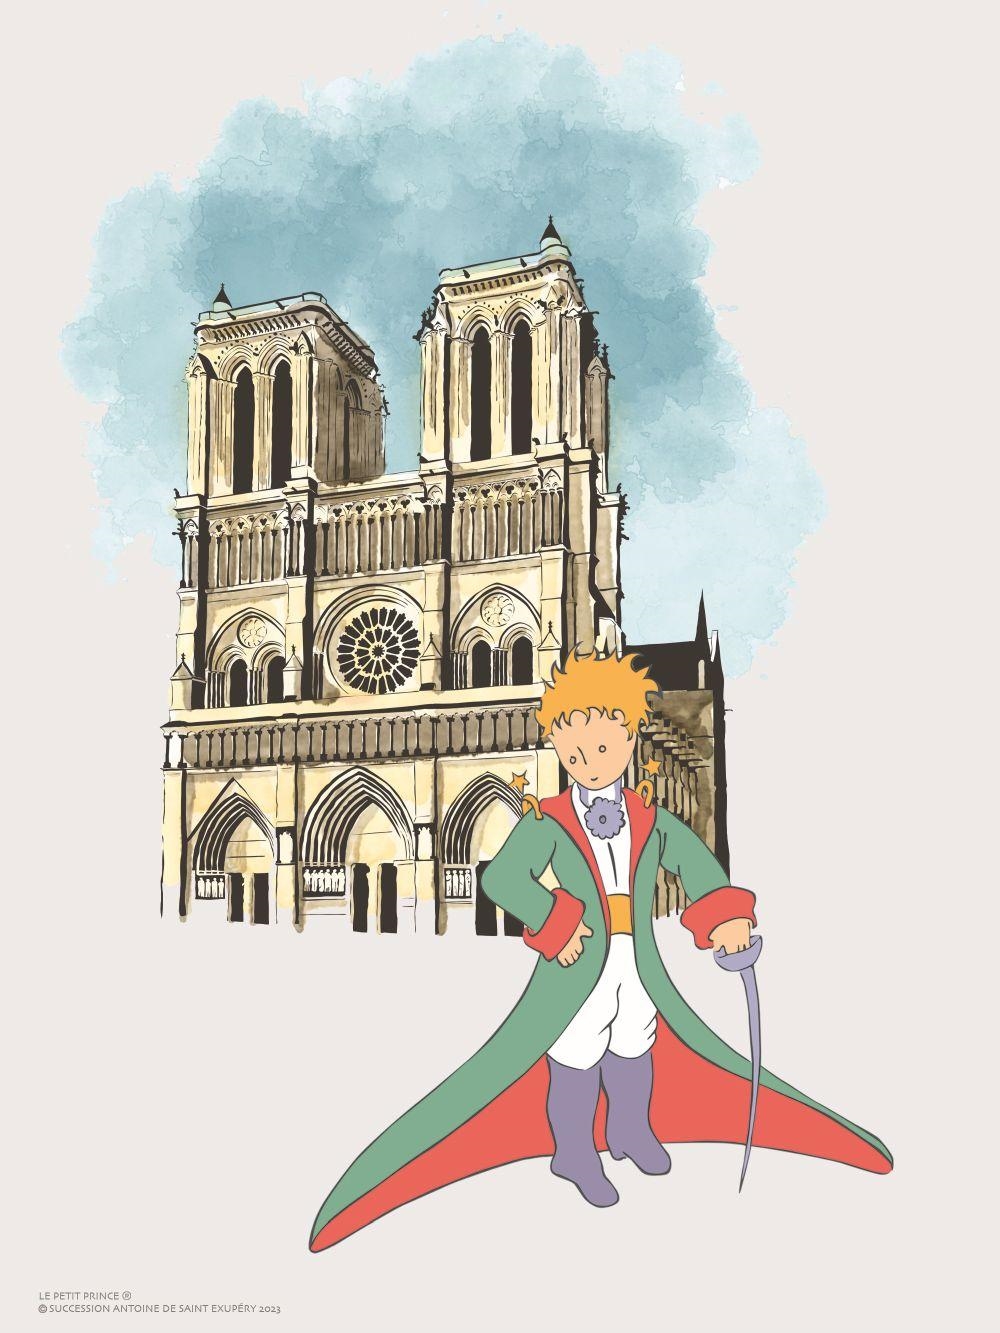 Le Petit Prince et Notre Dame by Antoine de Saint-Exupéry